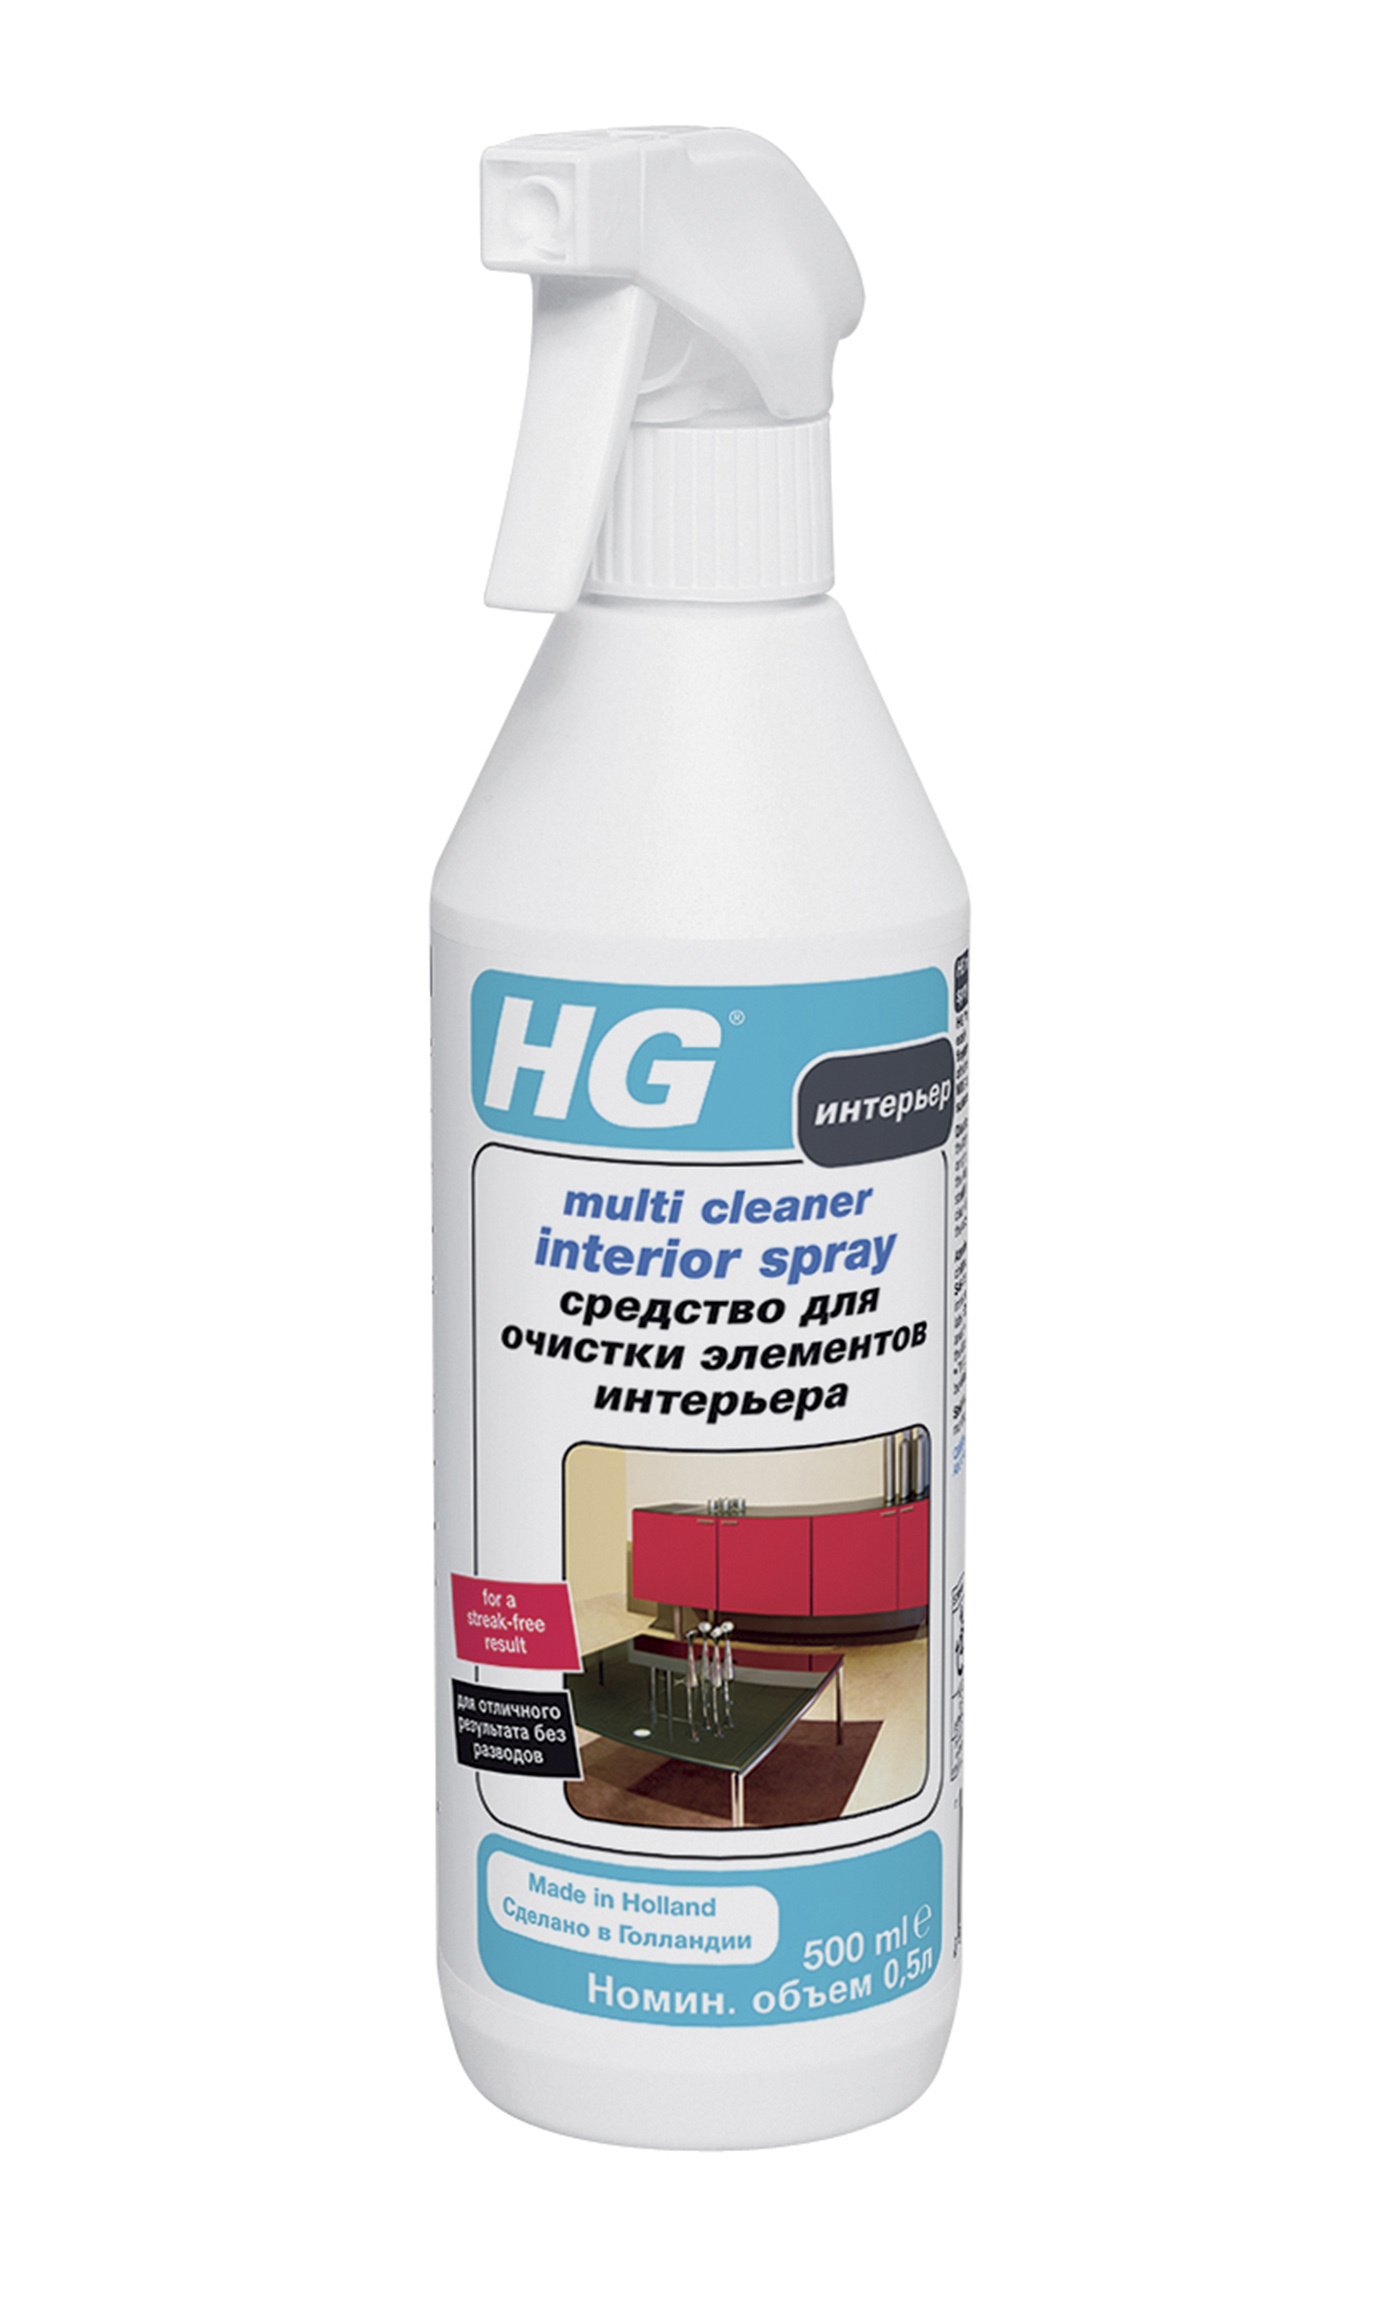 Средство для очистки элементов интерьера HG арт 148050161